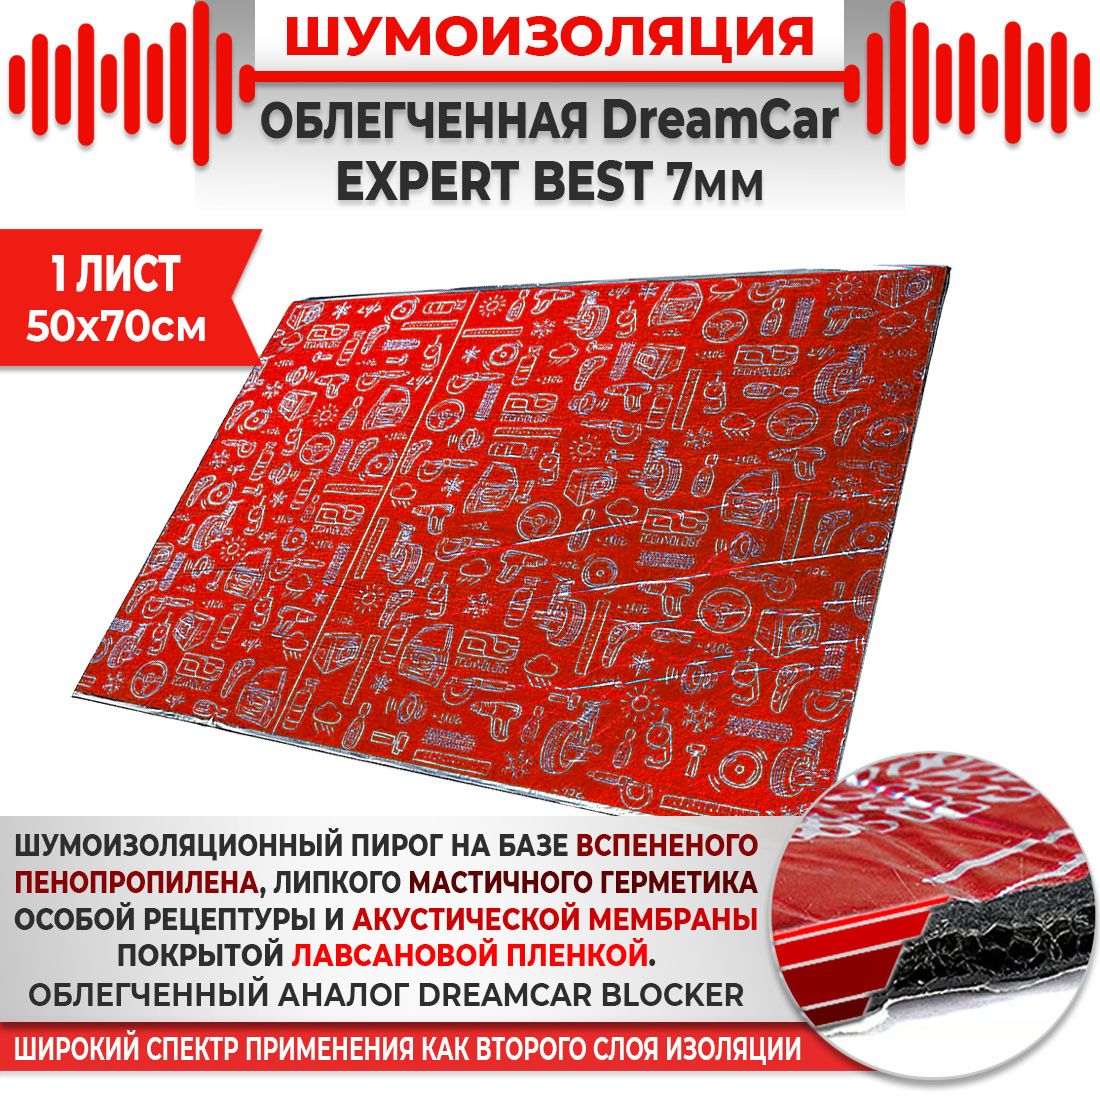 1шт. Шумоизоляция 4х слойная DreamCar Expert Best  7мм 0.7х0.5м 1 лист